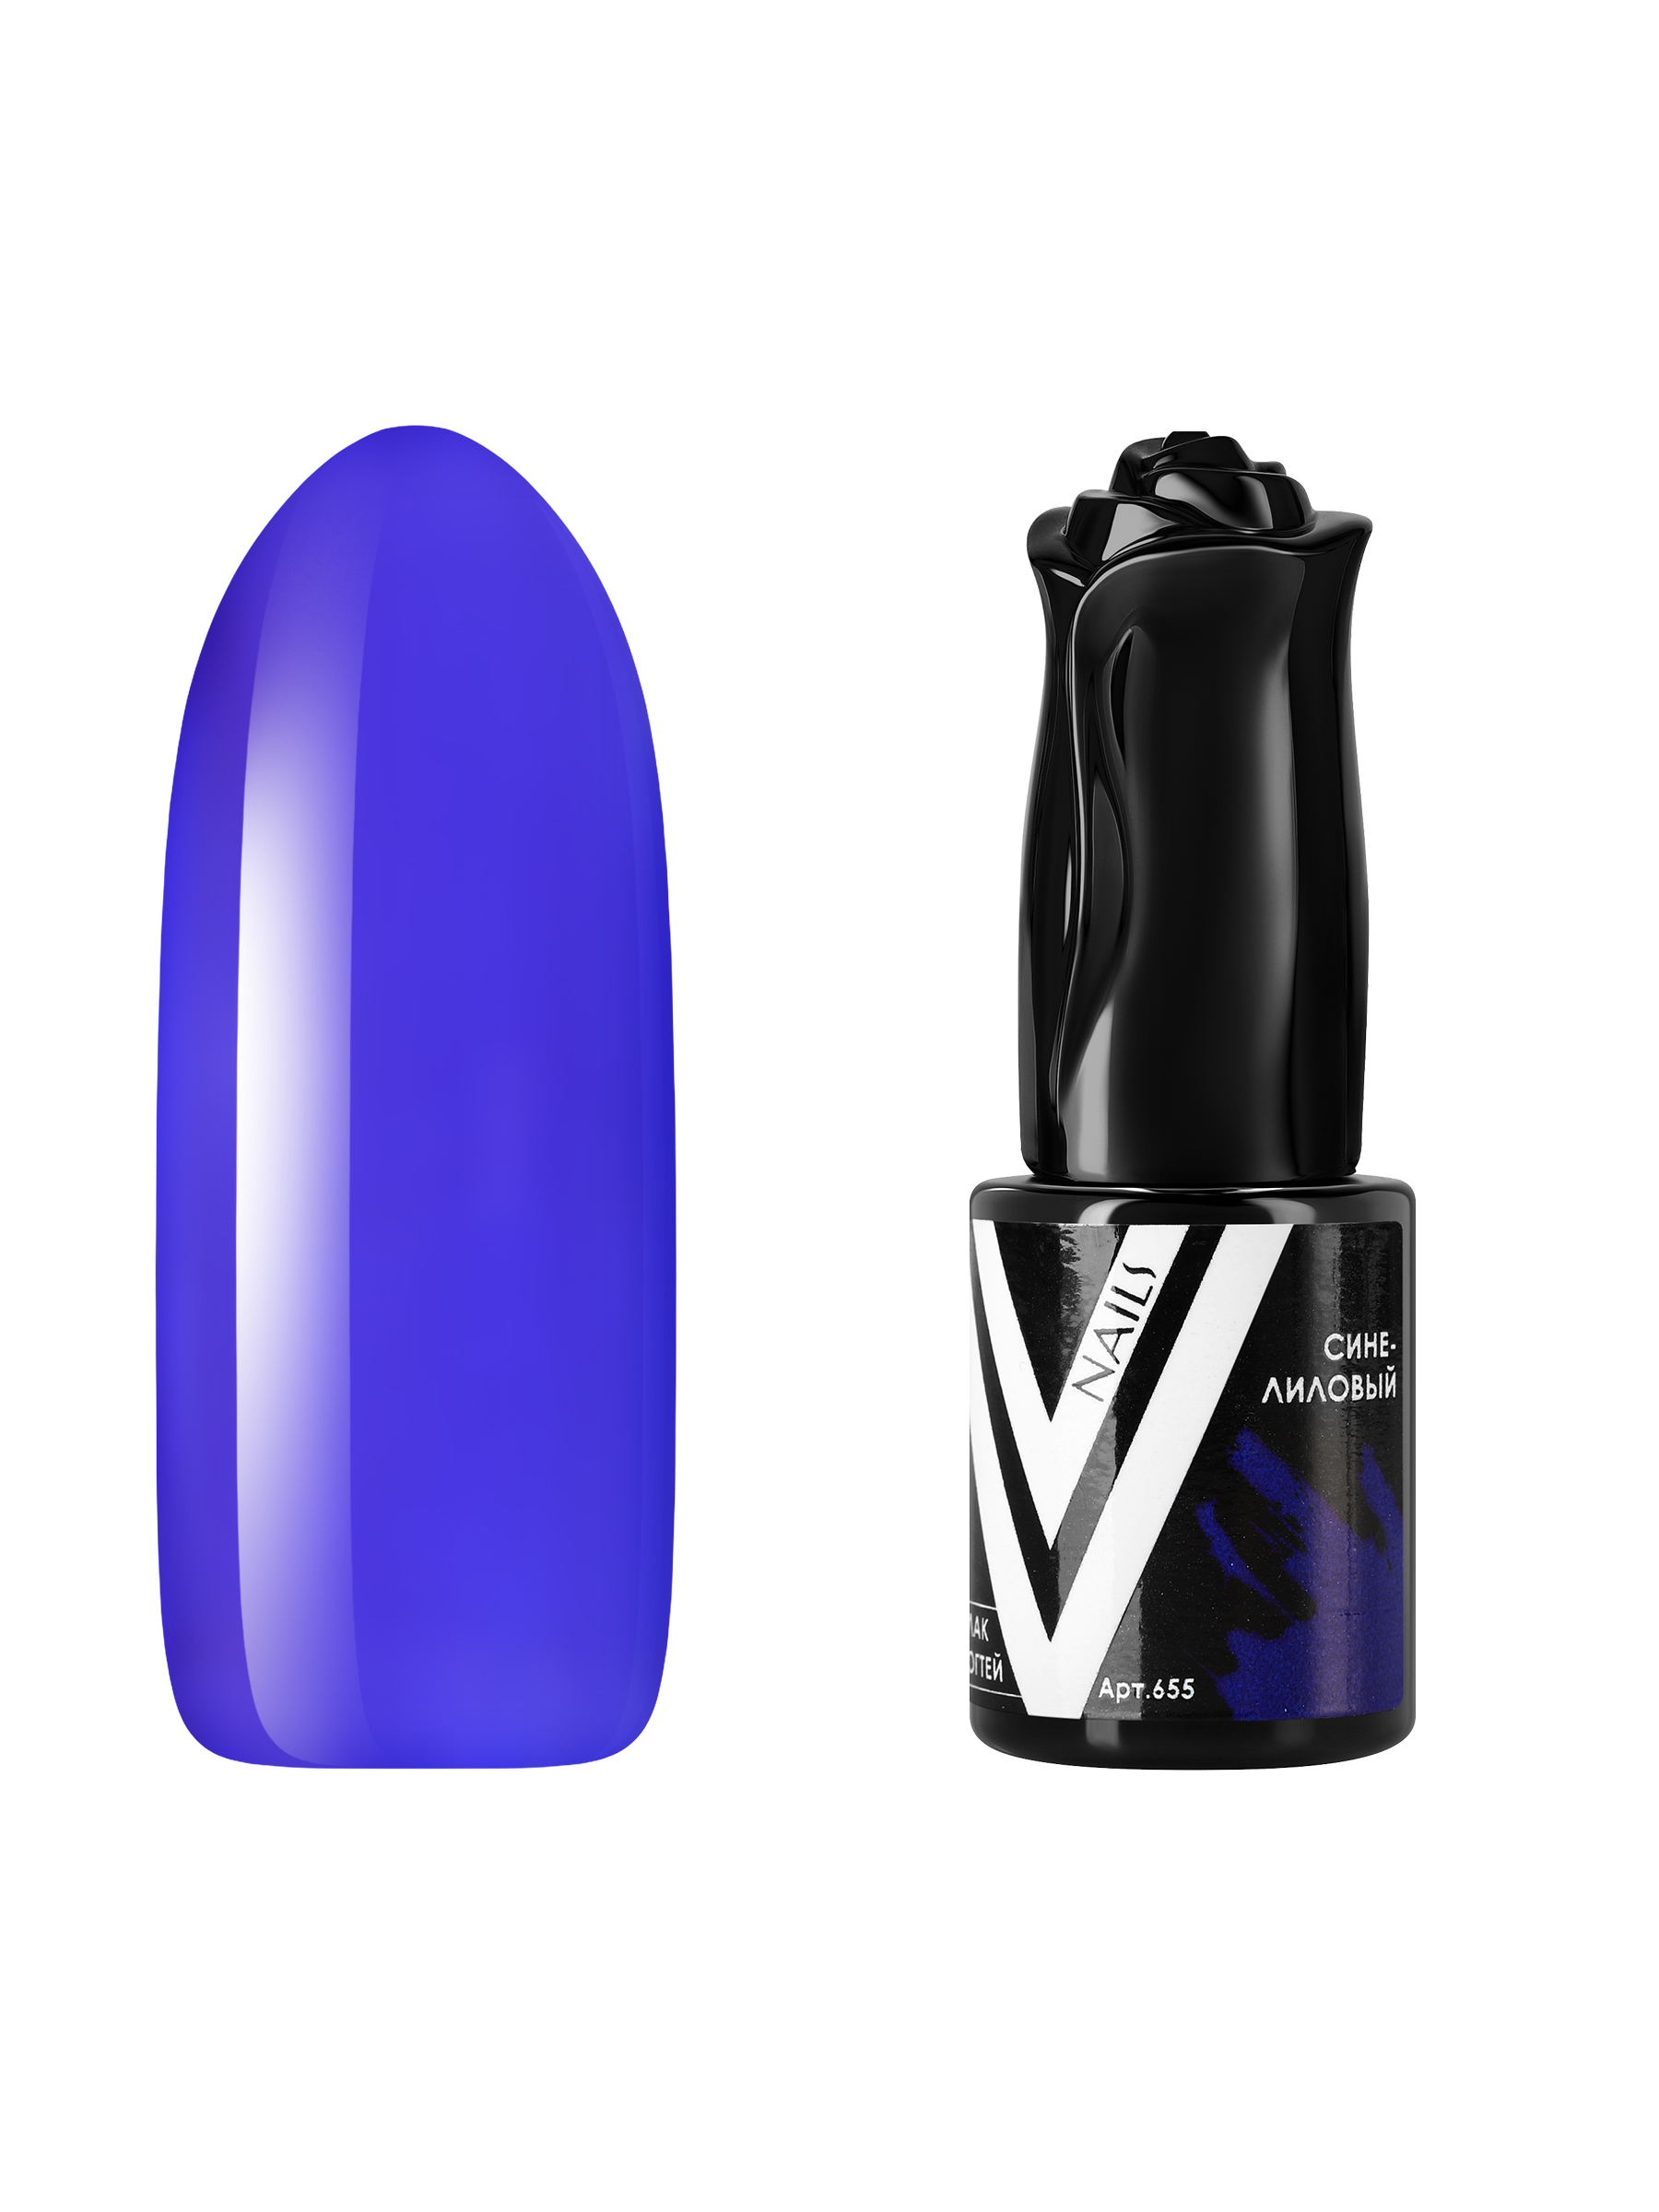 Гель-лак витражный Vogue Nails для аквариумного дизайна прозрачный фиолетовый синий, 10 мл